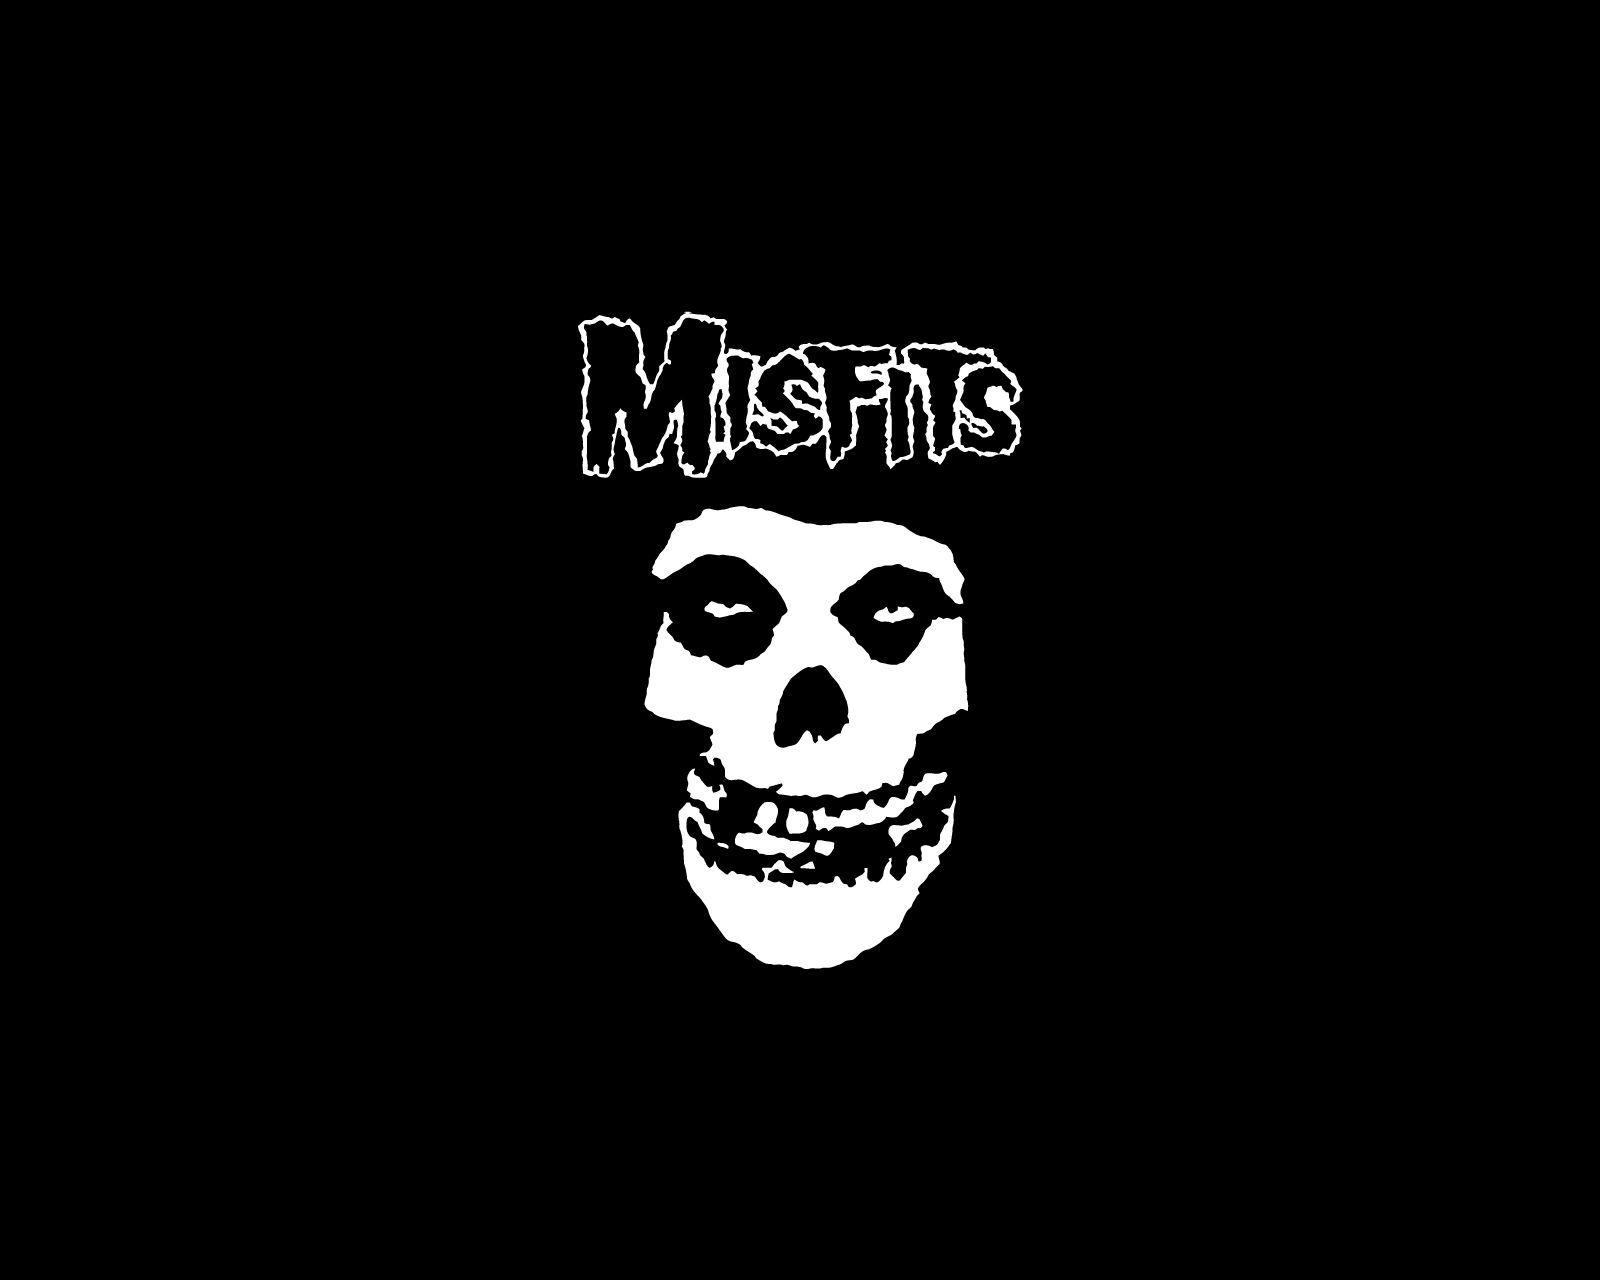 Misfits logo and wallpaper. Logos, Wallpaper and Misfits band